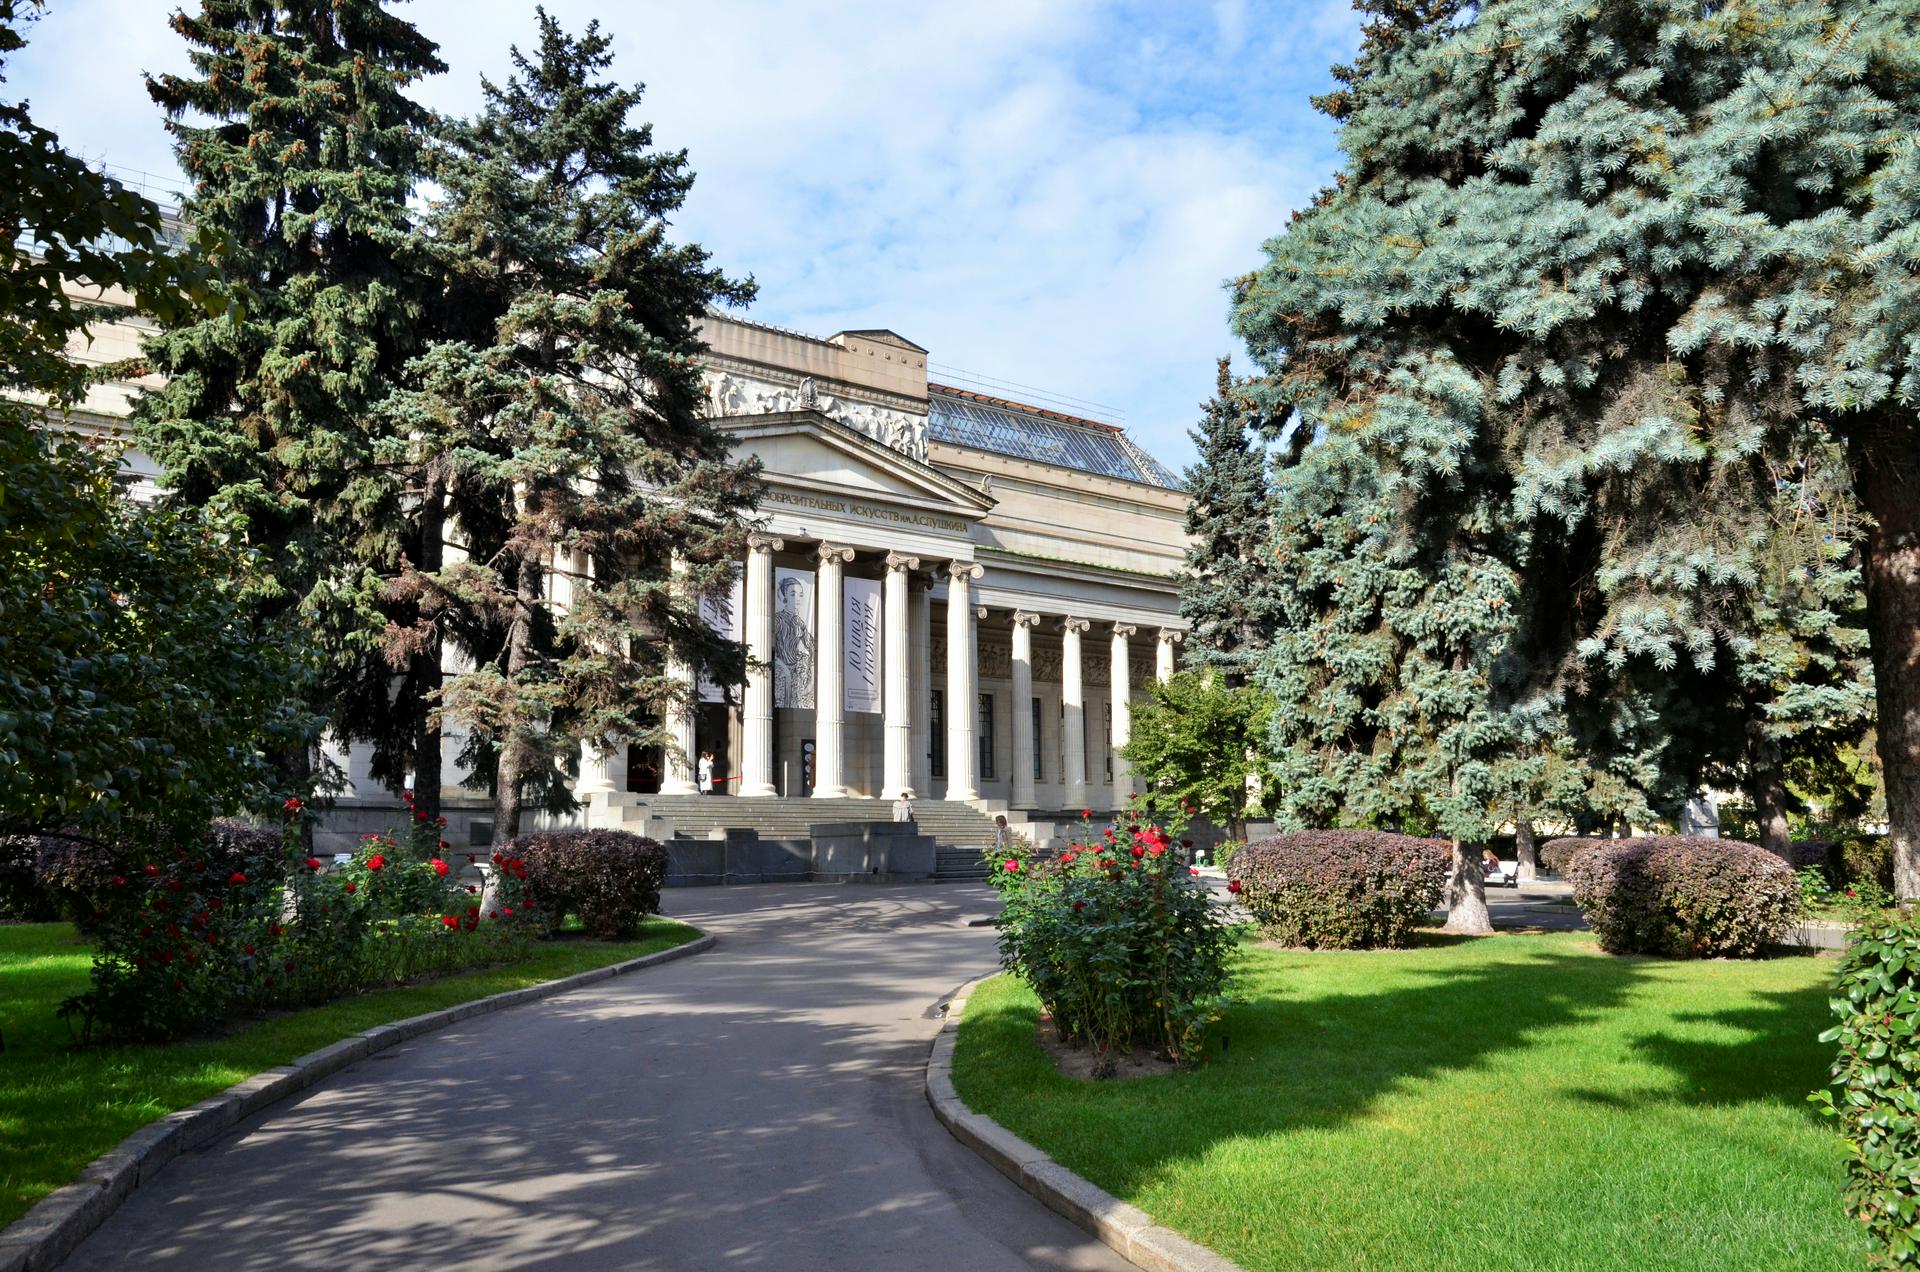 Музей изобразительных искусств им пушкина официальный сайт